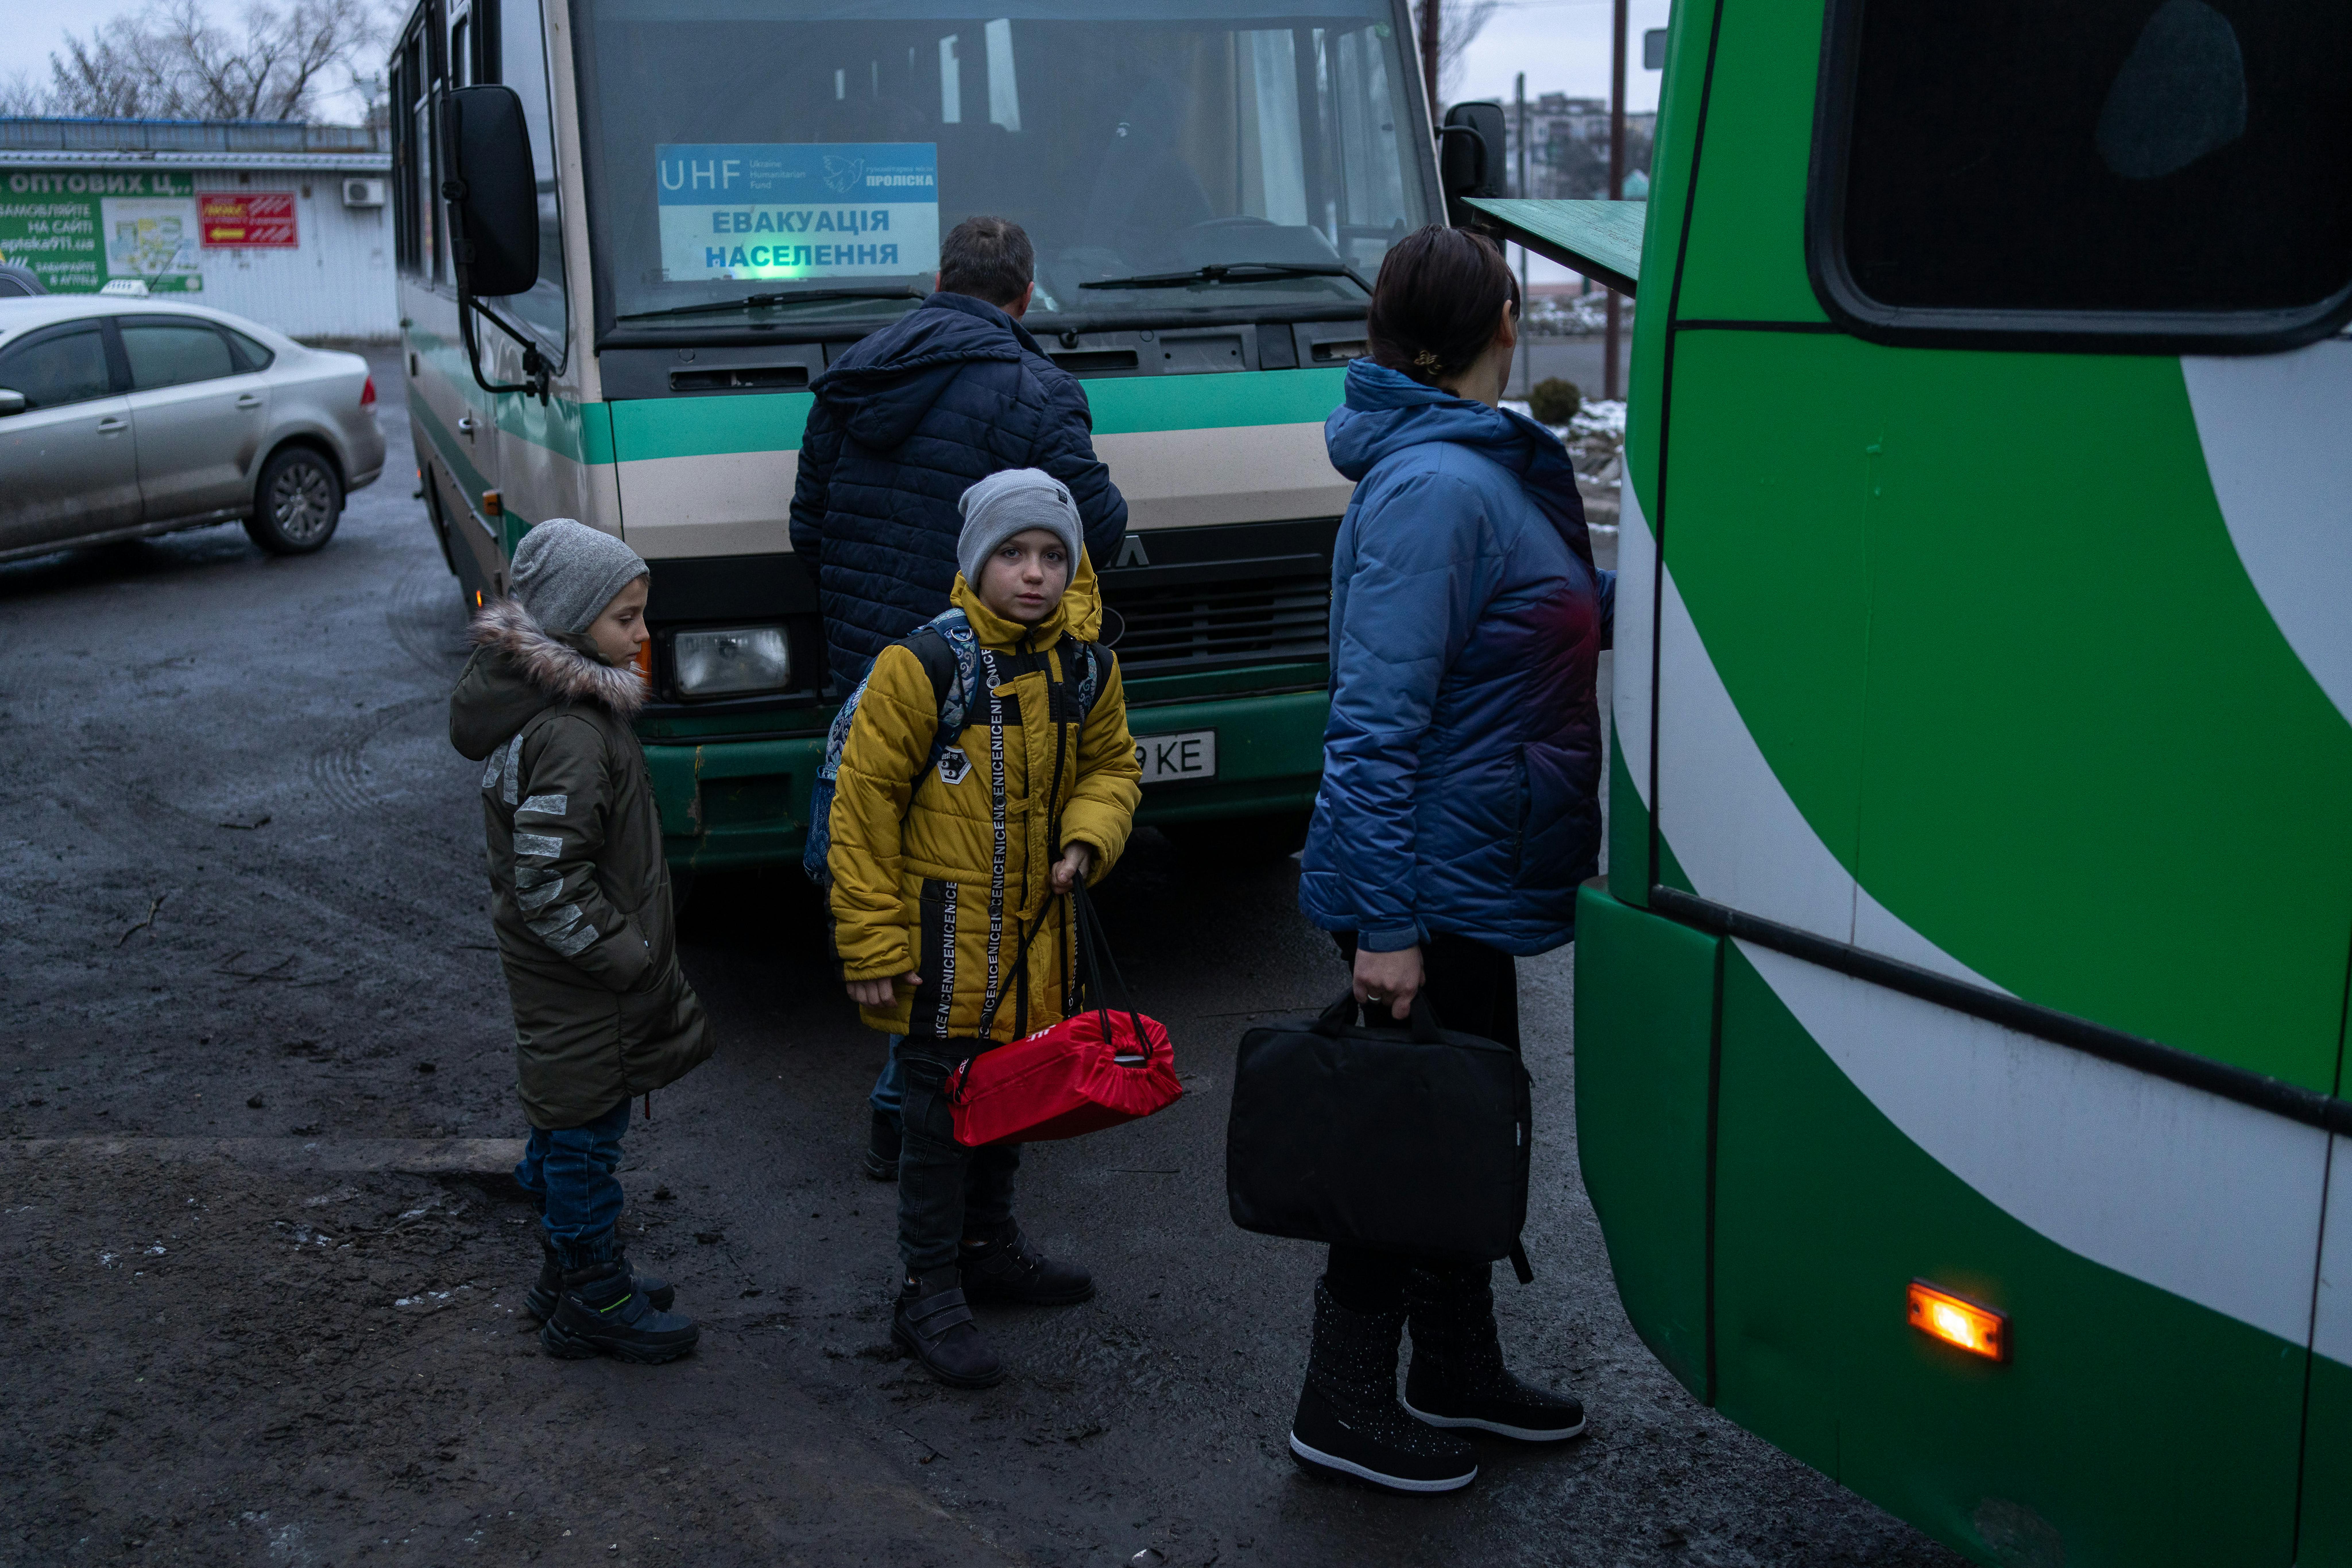 Mykyta, 10 anni, Serhiy 6 anni stanno salendo sull'autobus.